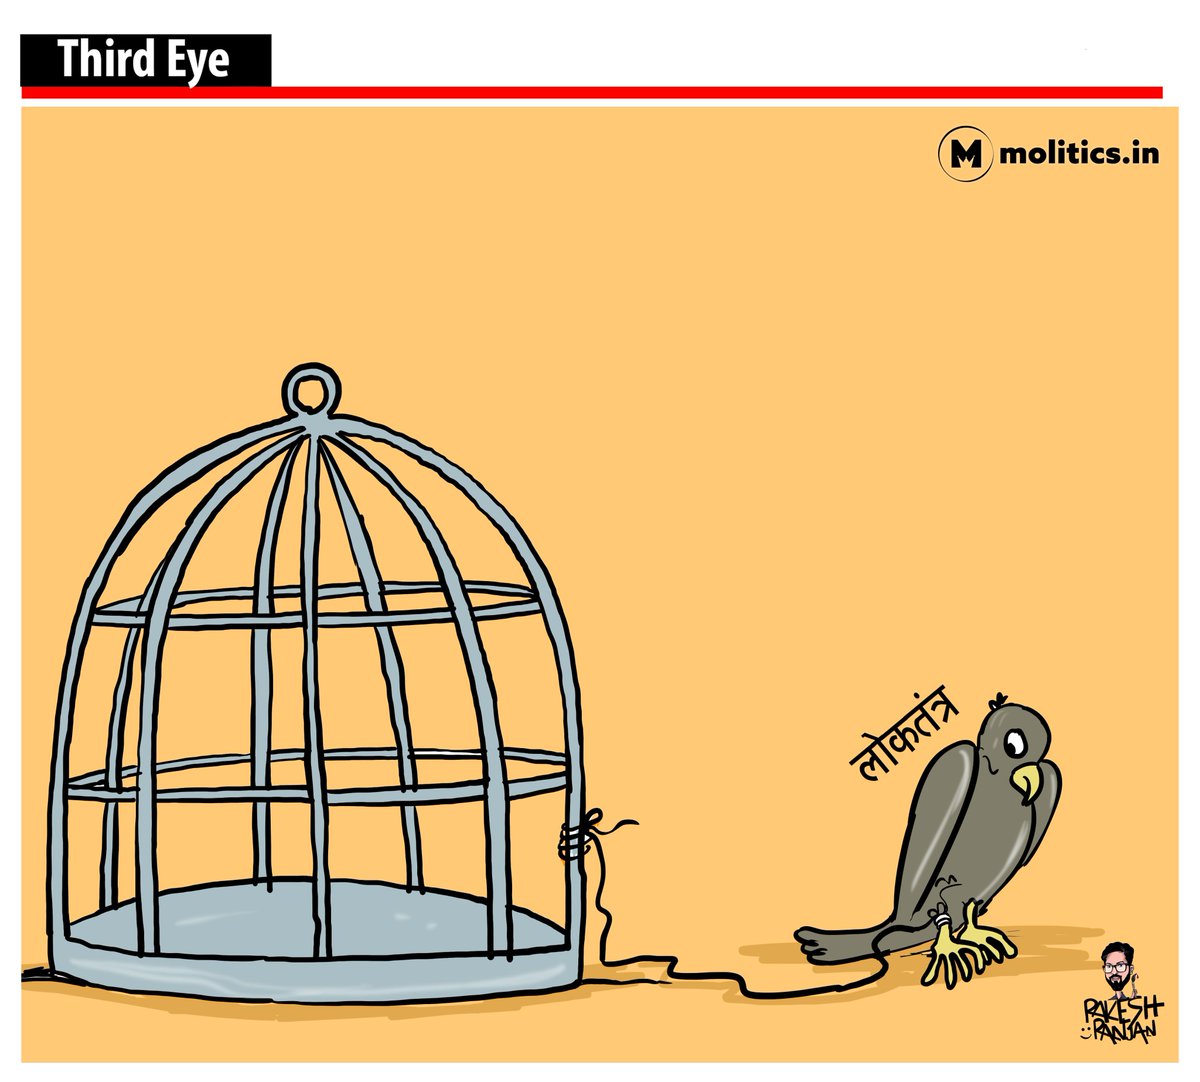 'क़ैद में हैं मगर इससे भी बड़ा है इक दुख
कि कैदियों को रिहाई की भी तलब नहीं है'

#DemocracyAtRisk